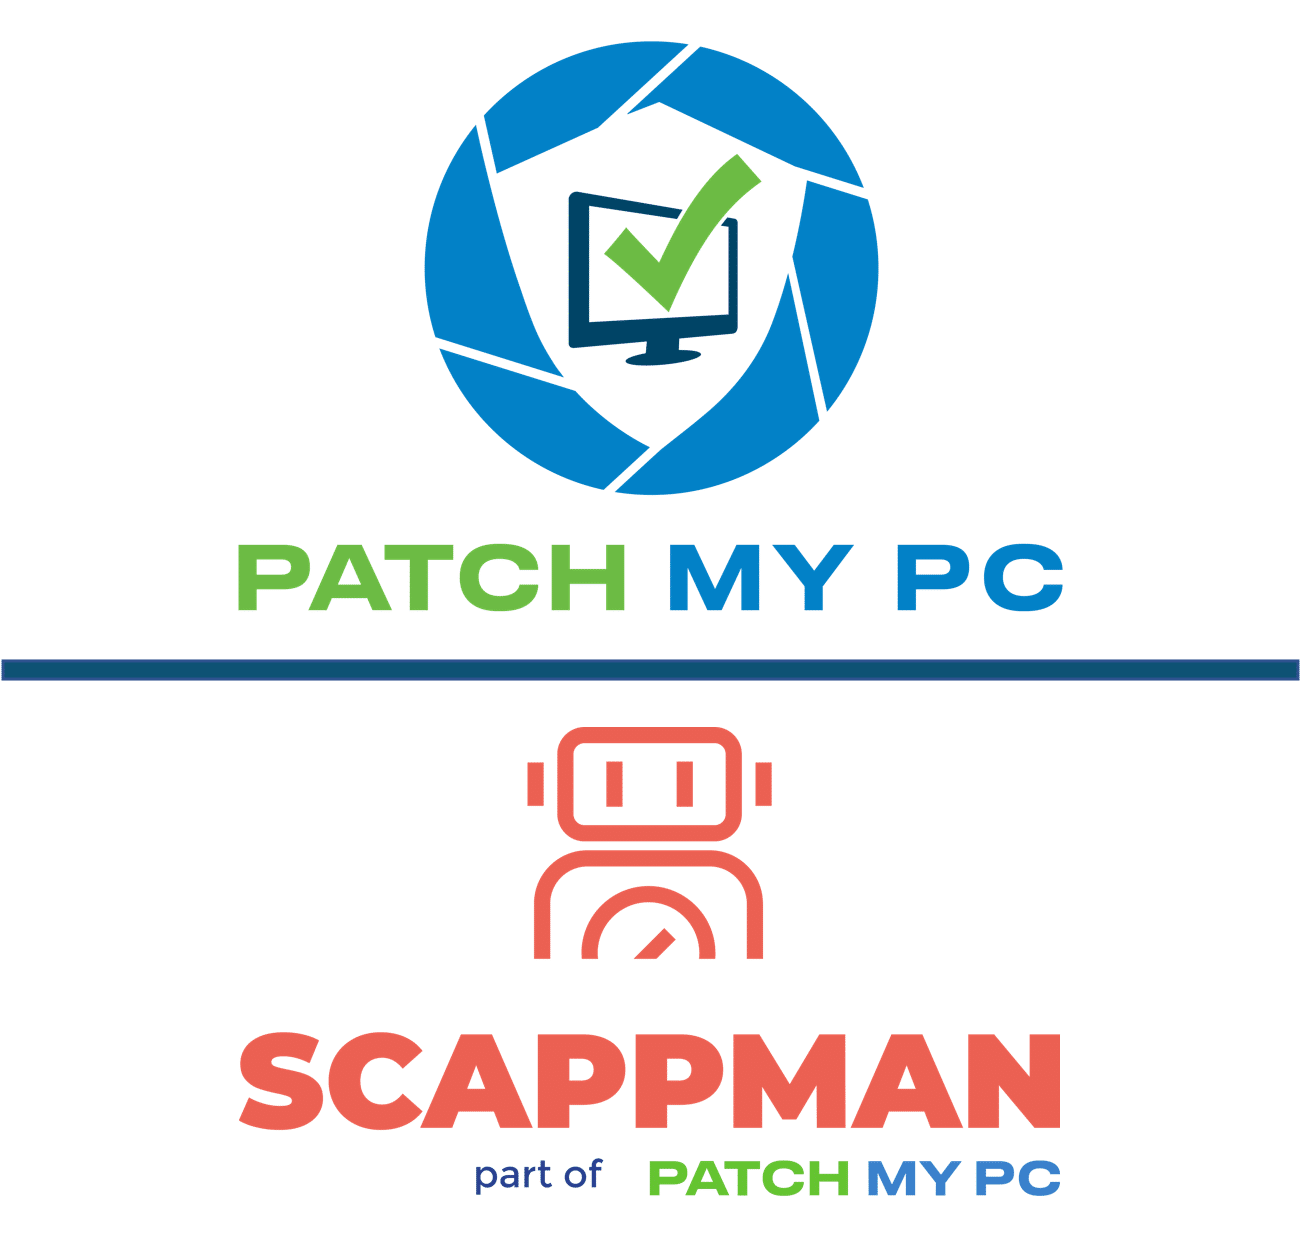 Produkt Logo Patch my PC und Scappman